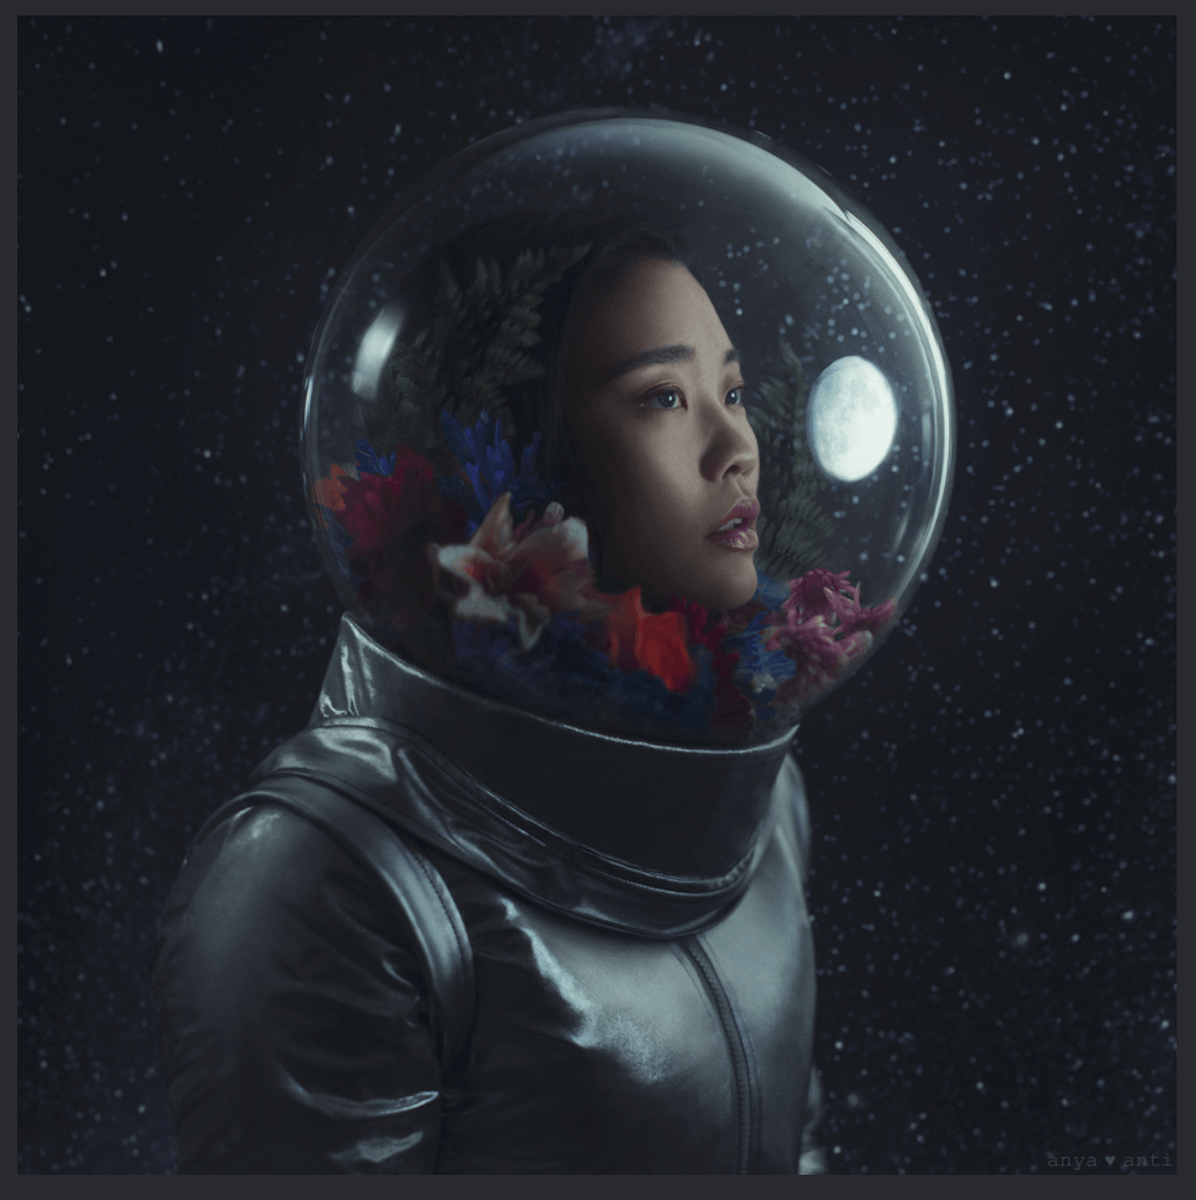 Astronaut portrait with flowers in her helmet